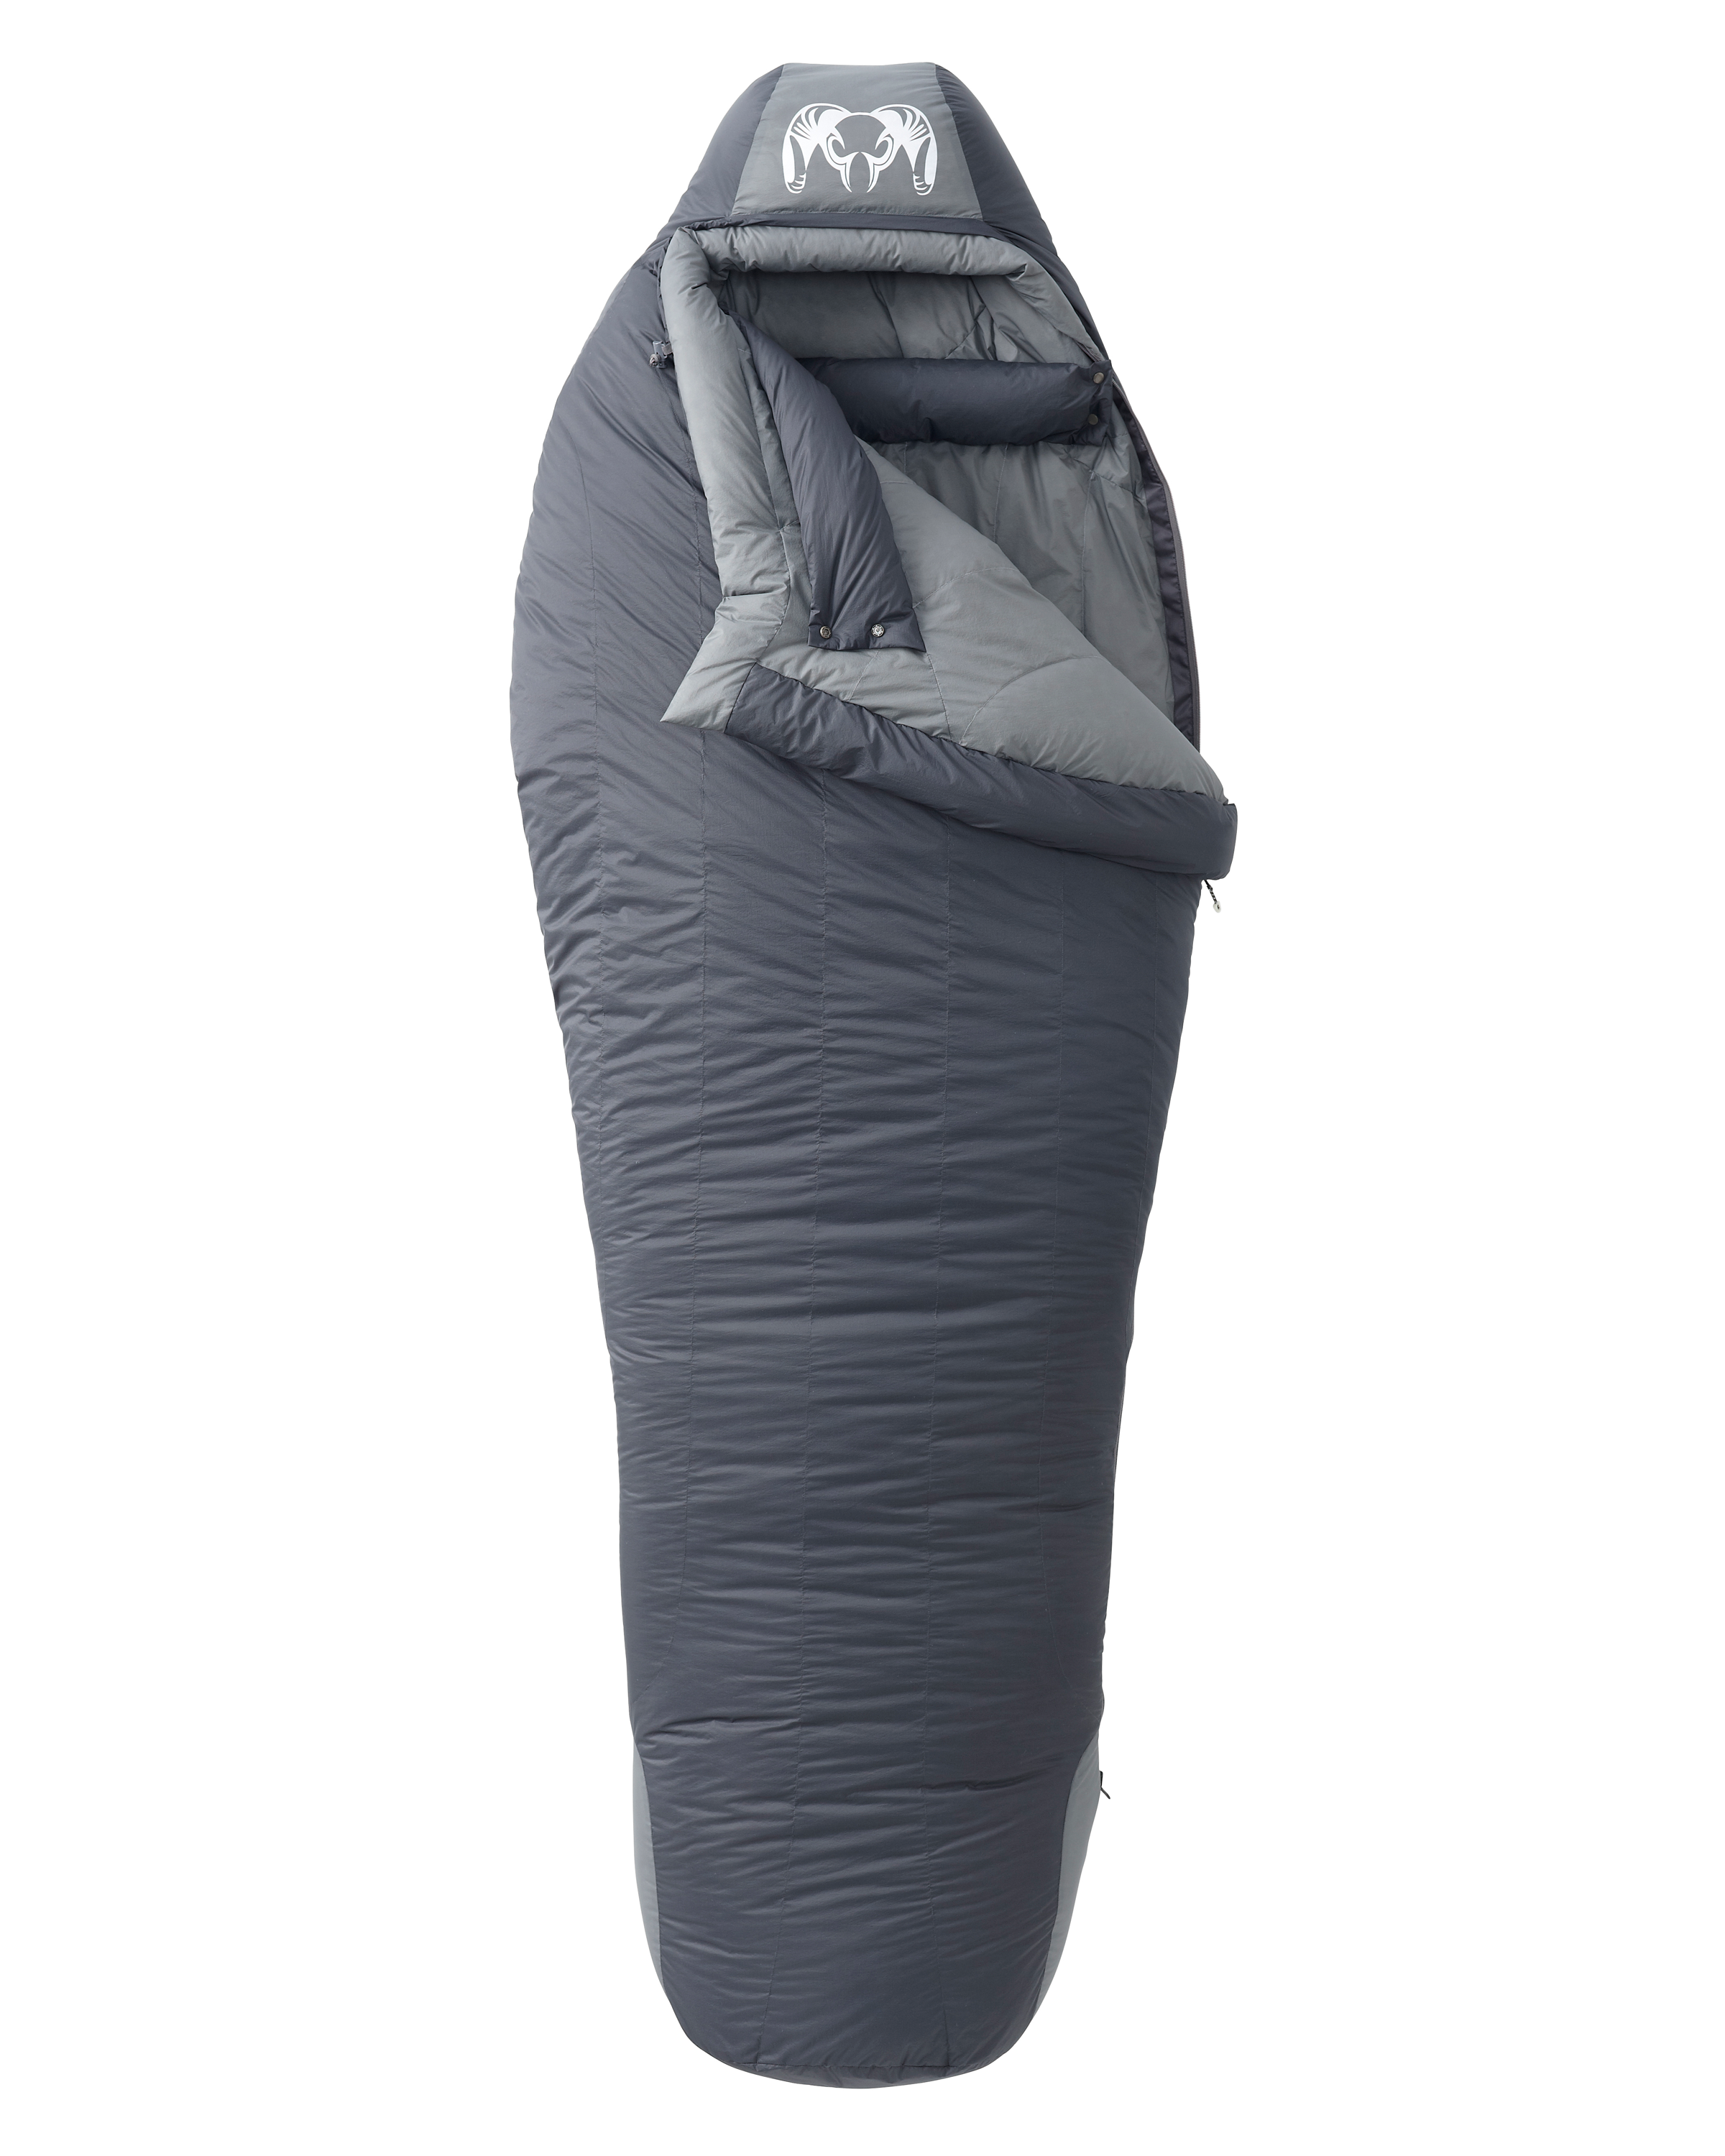 KUIU Super Down Sleeping Bag 15? | Phantom-Steel Grey in Phantom Steel Grey | Size REG